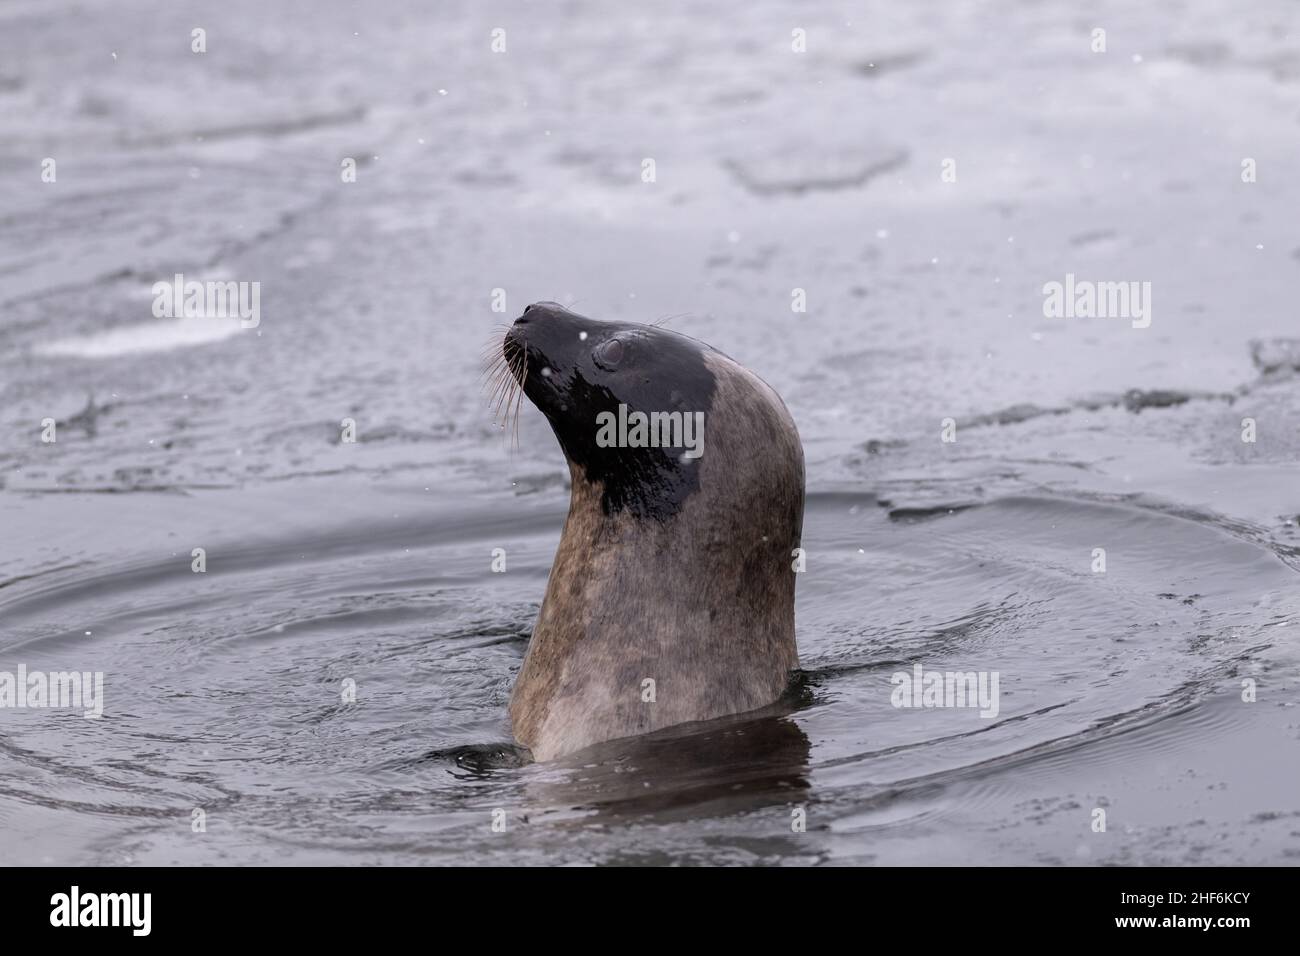 Le phoque du Groenland adulte nageant avec sa tête hors de l'océan Atlantique froid et rigide.L'animal a de longs whiskers, des yeux sombres, un manteau de fourrure gris et un nez. Banque D'Images